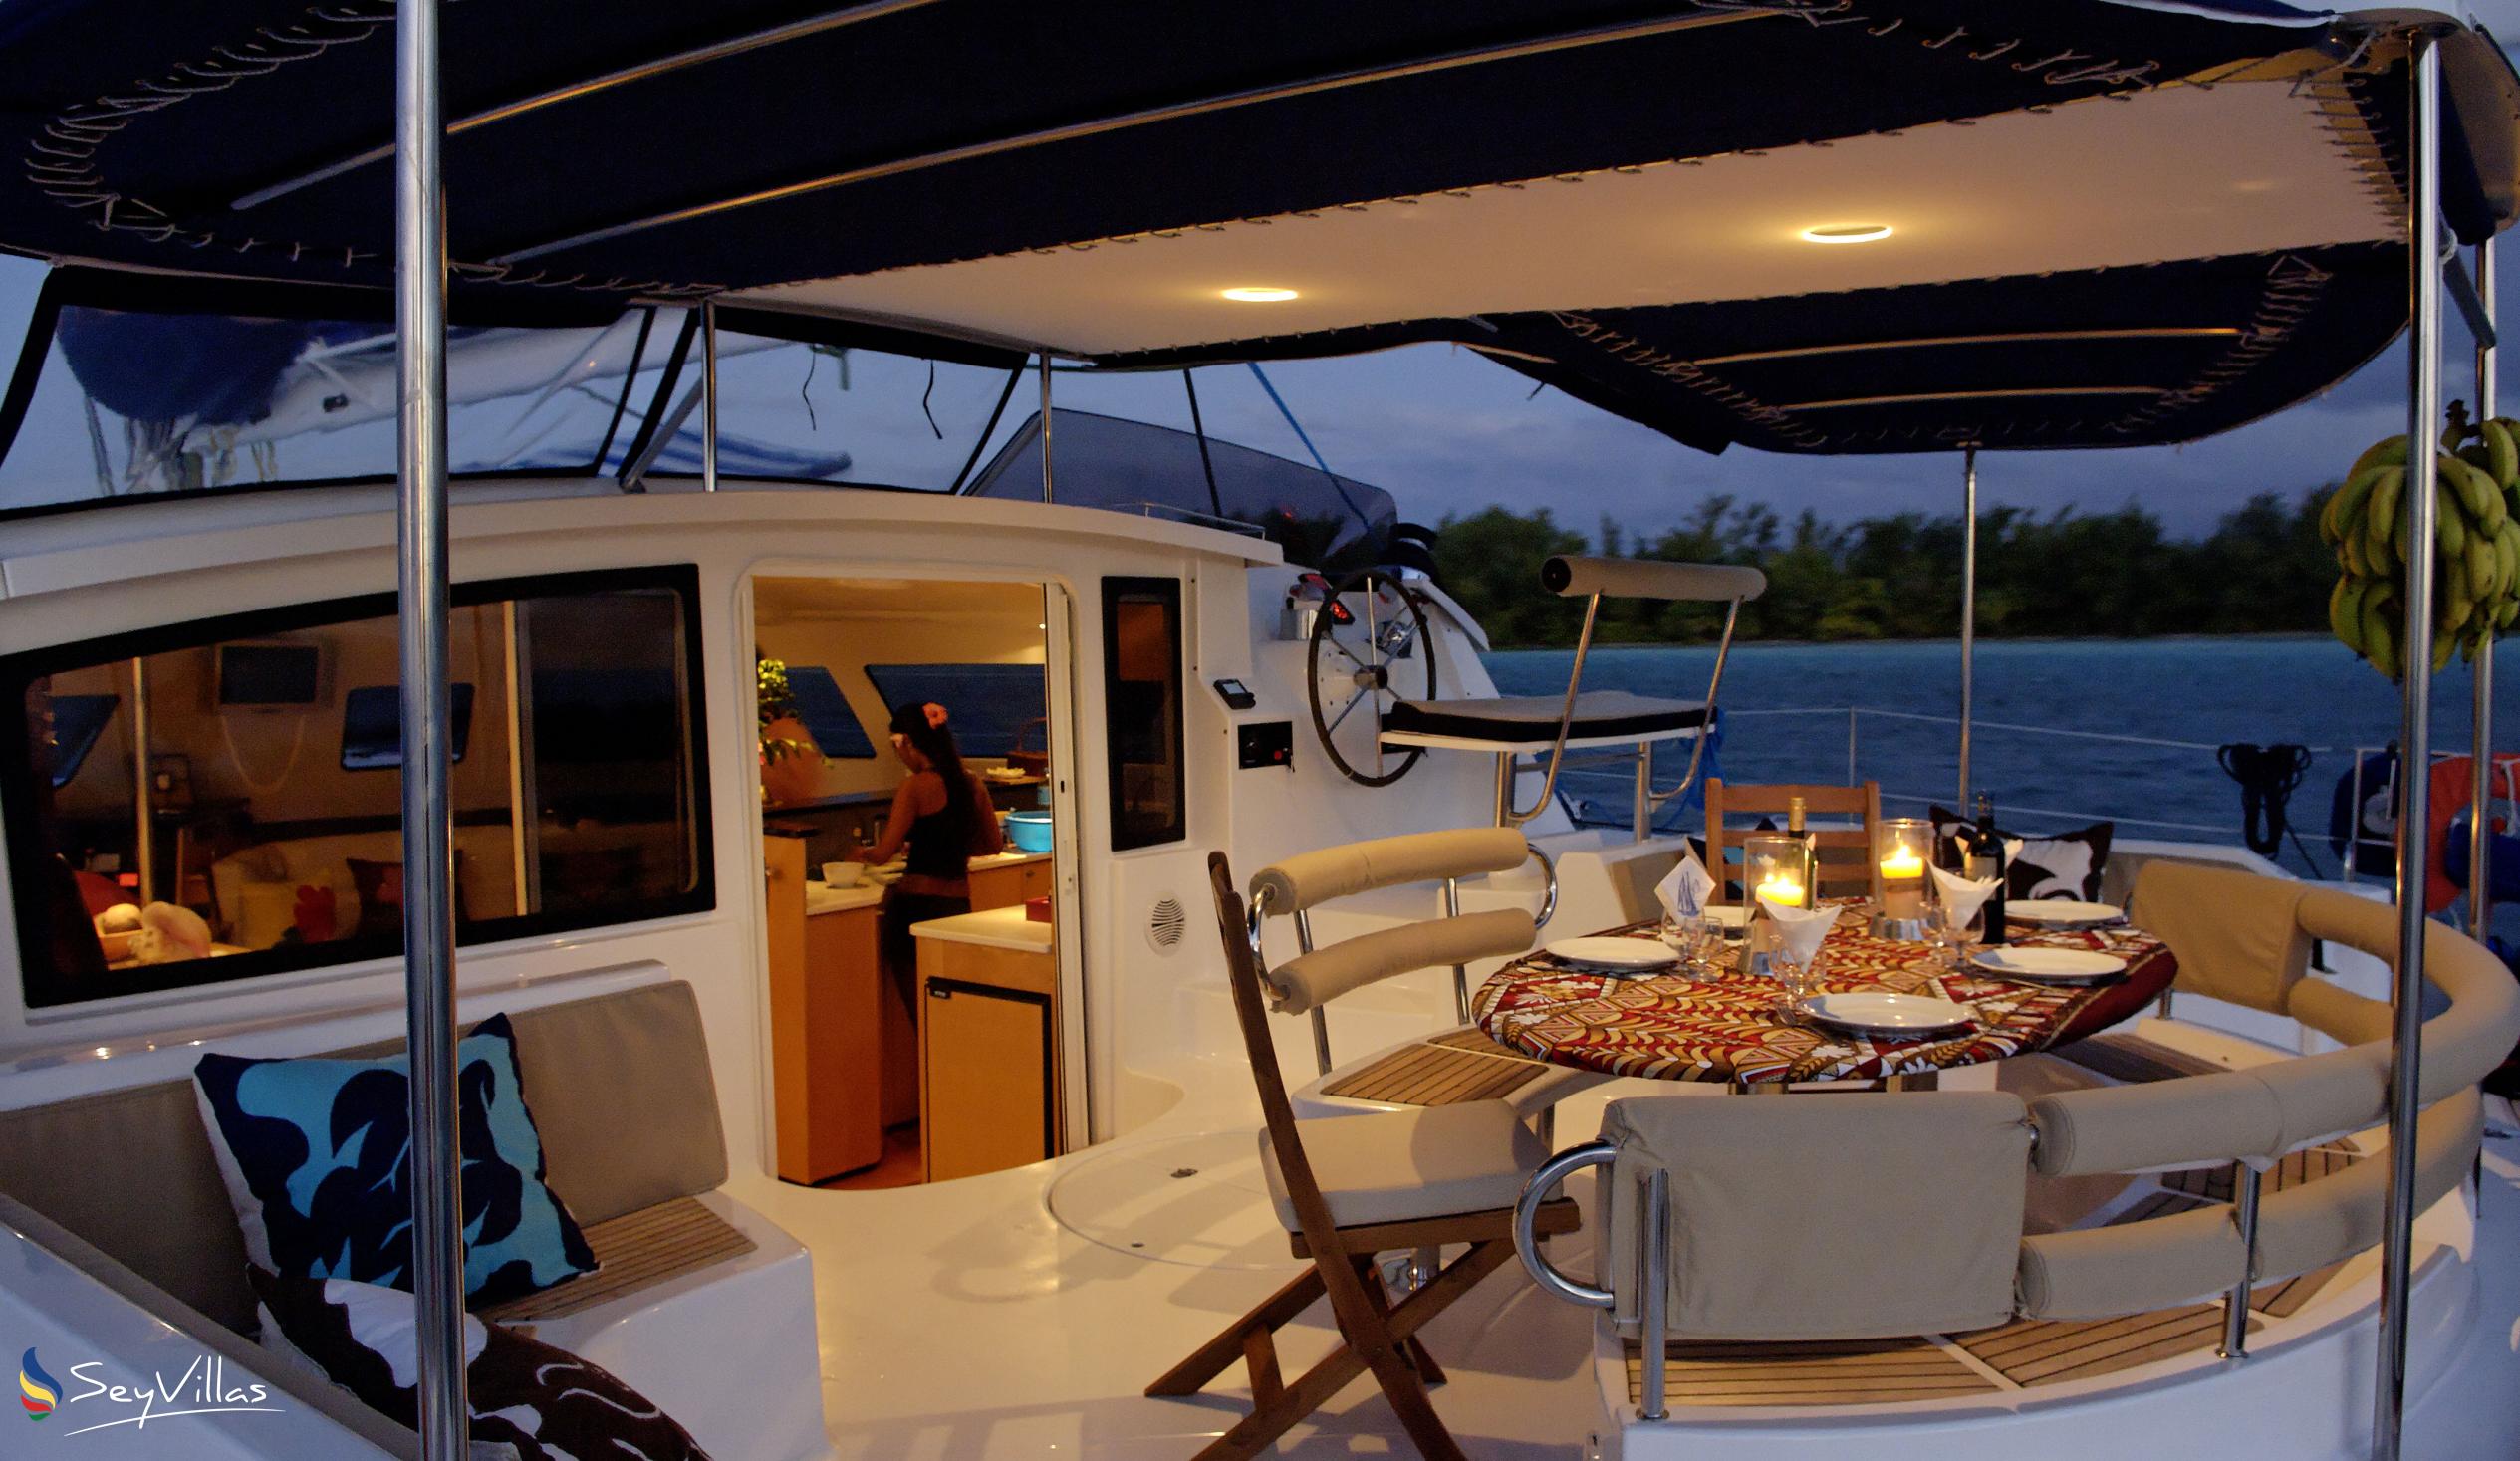 Foto 9: Dream Yacht Silhouette Dream - Innenbereich - Seychellen (Seychellen)